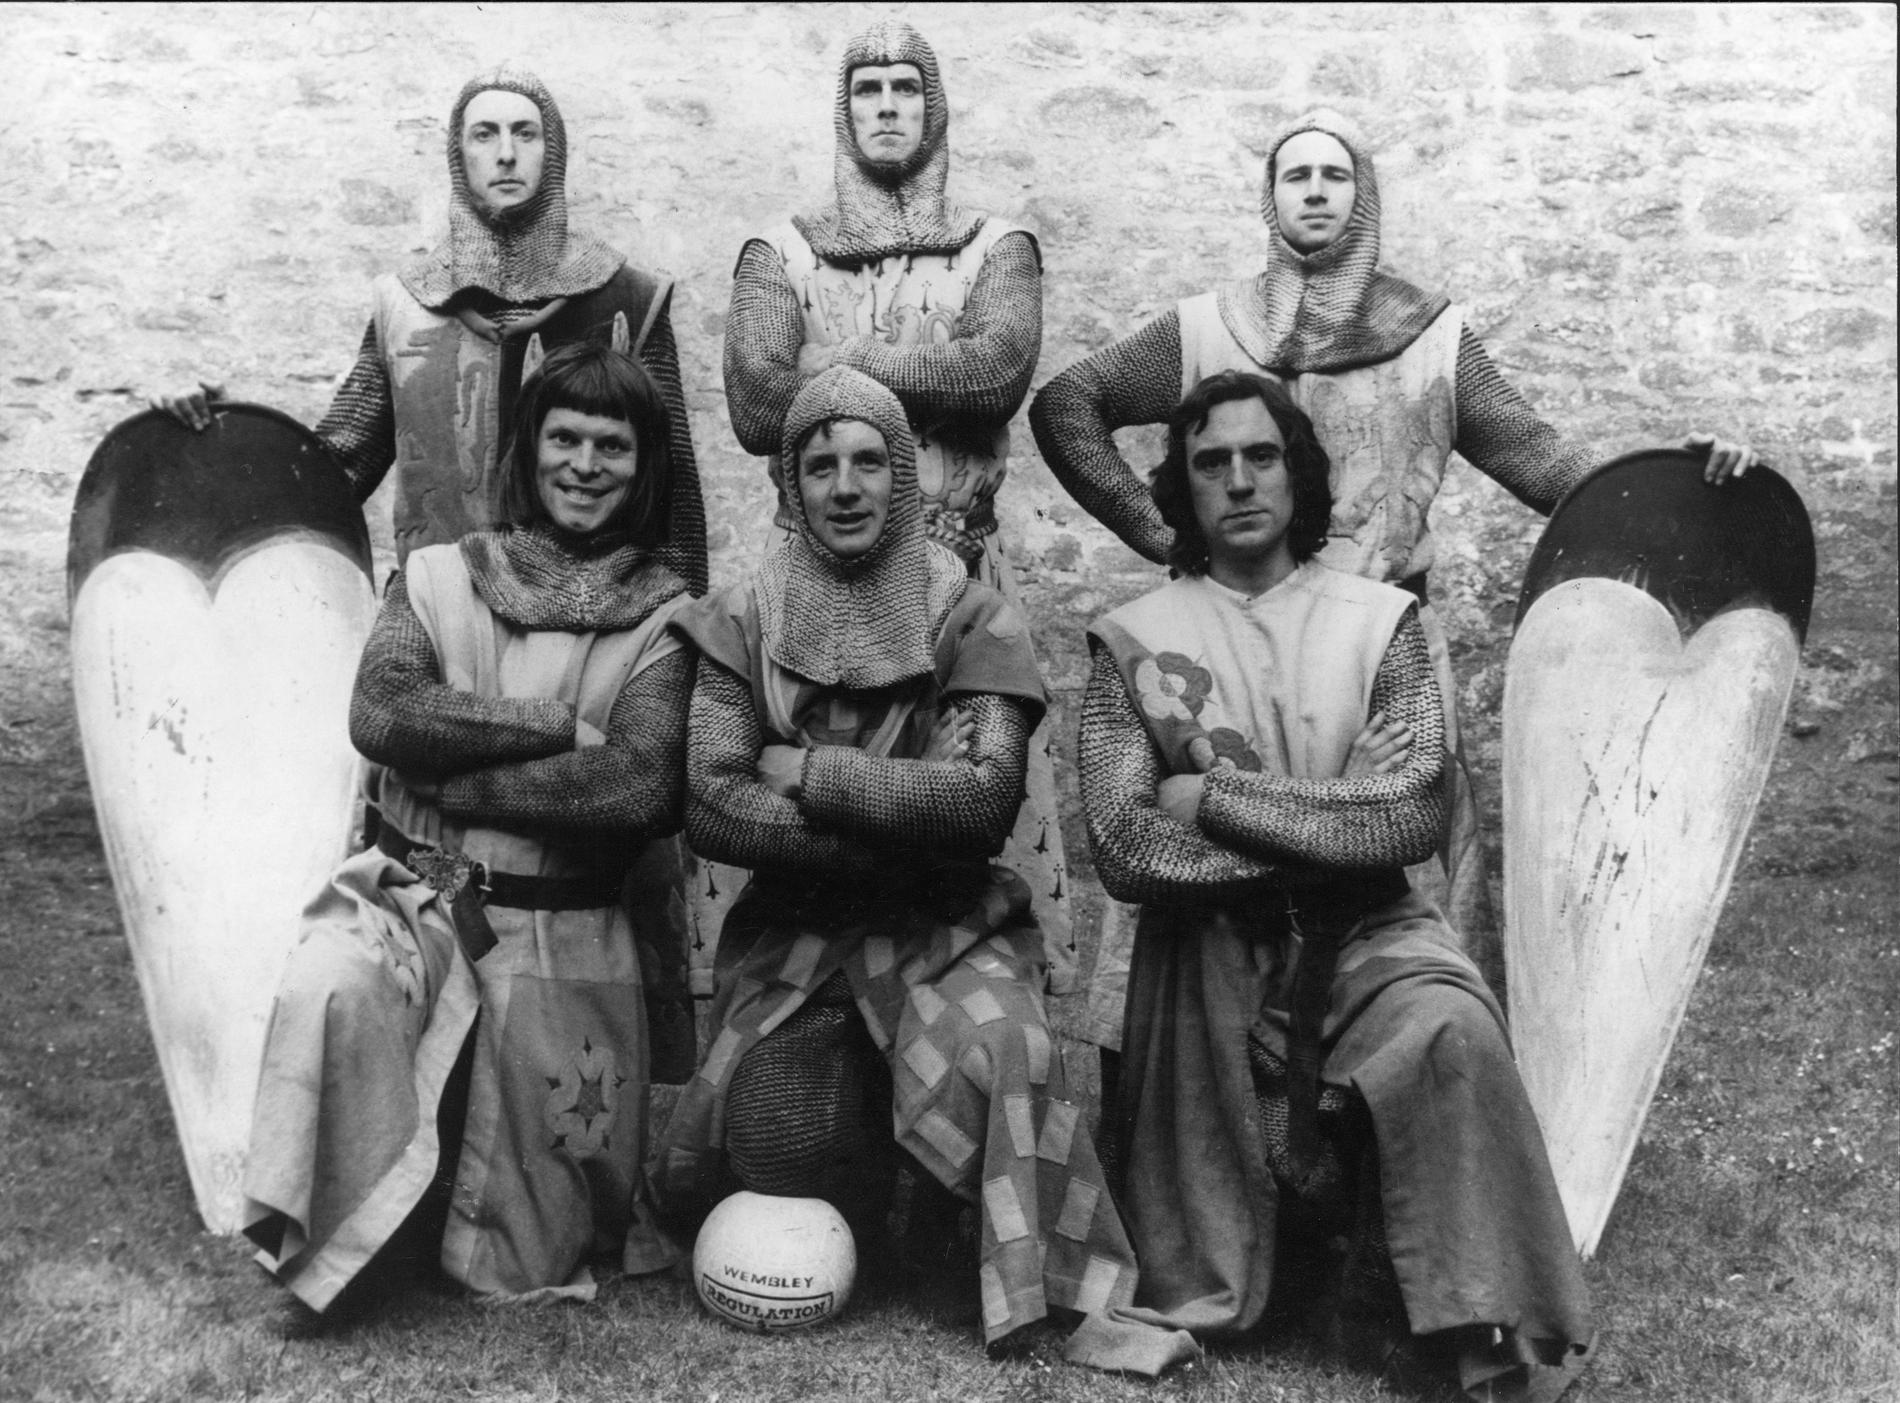 "Monty Pythons galna värld" Främre raden fr.v. Terry Gilliam, Michael Palin, Terry Jones och bakre fr.v. Eric Idle, John Cleese och Neil Innes. 